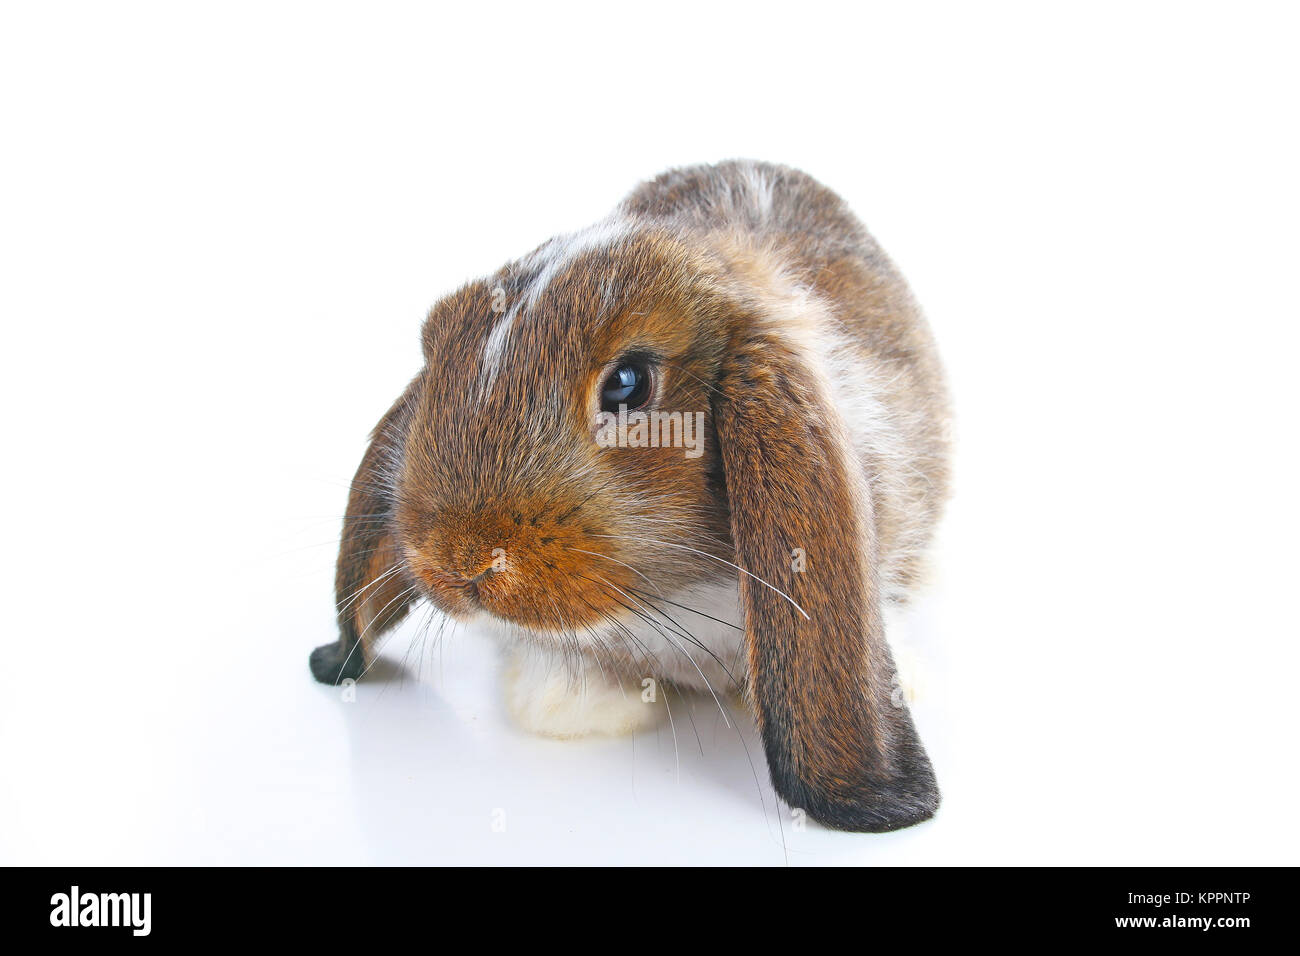 Coniglio agouti. Baby bunny lop sul bianco isolato di sfondo per studio. Lop eared marrone colorata agoutu coniglio. Foto di Pet. Foto Stock